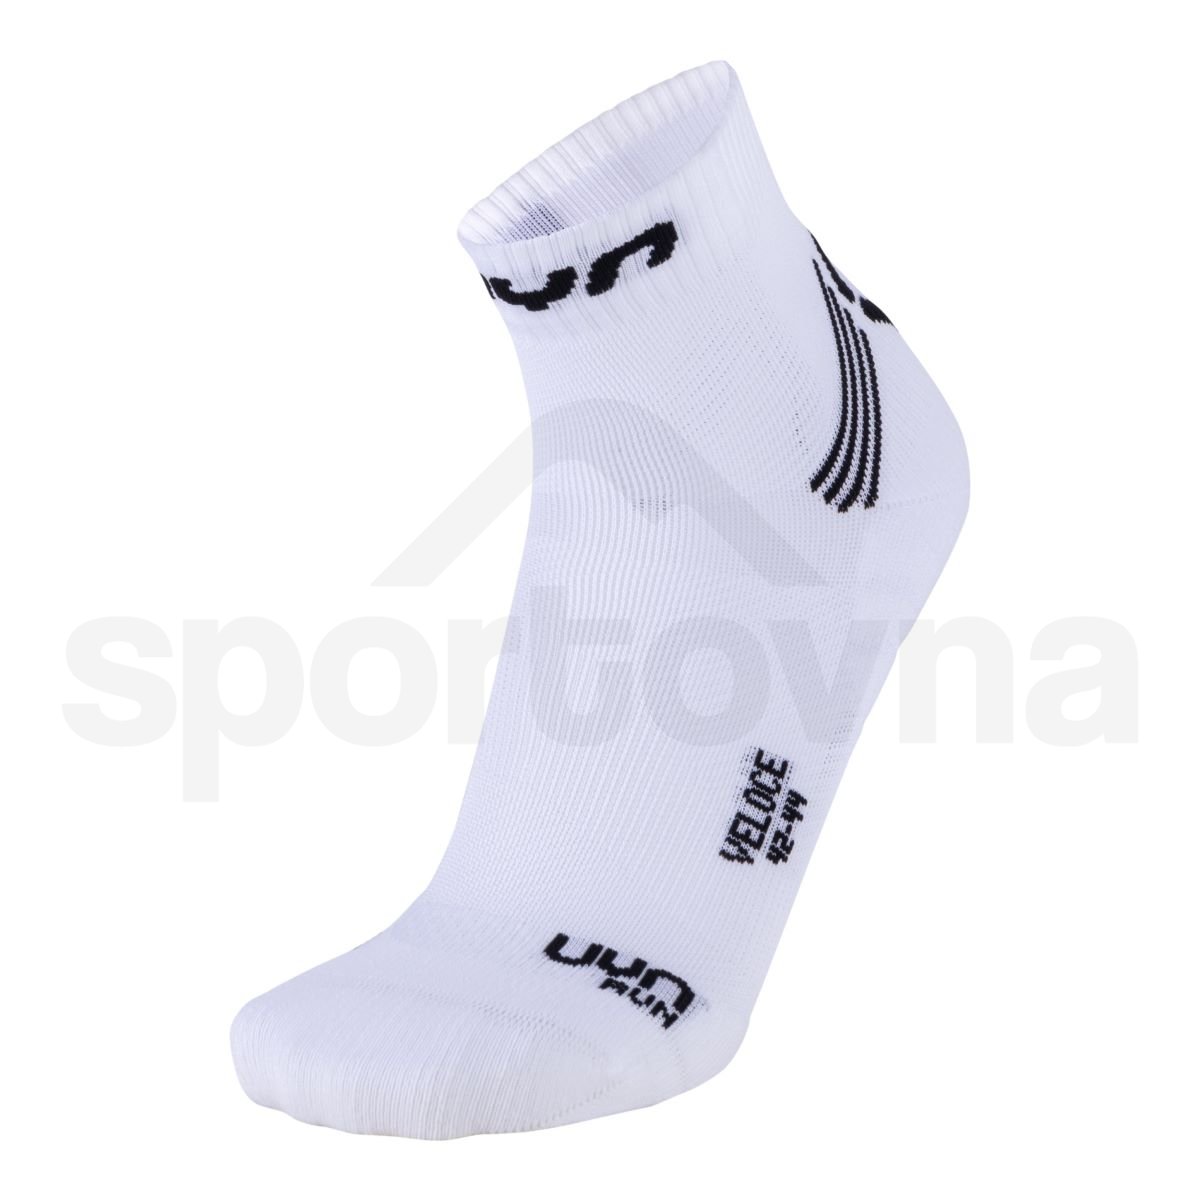 uyn-run-veloce-socks-white-black-2-1306804